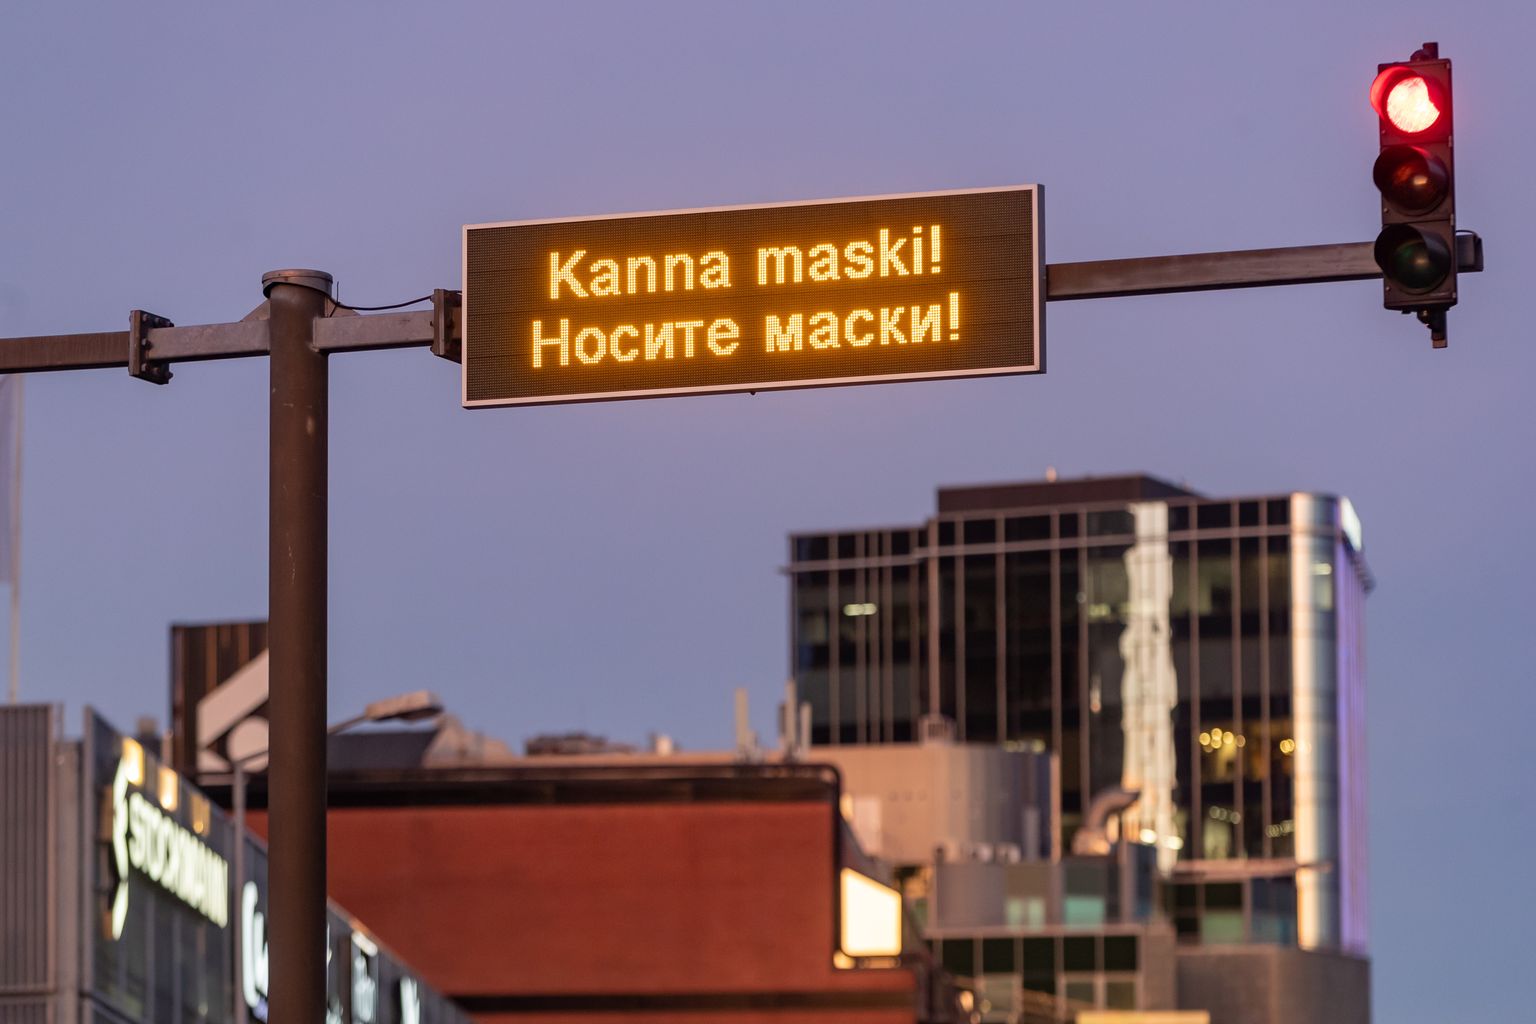 "Kanna maski"! Tallinna liiklusinfo tabloodel.